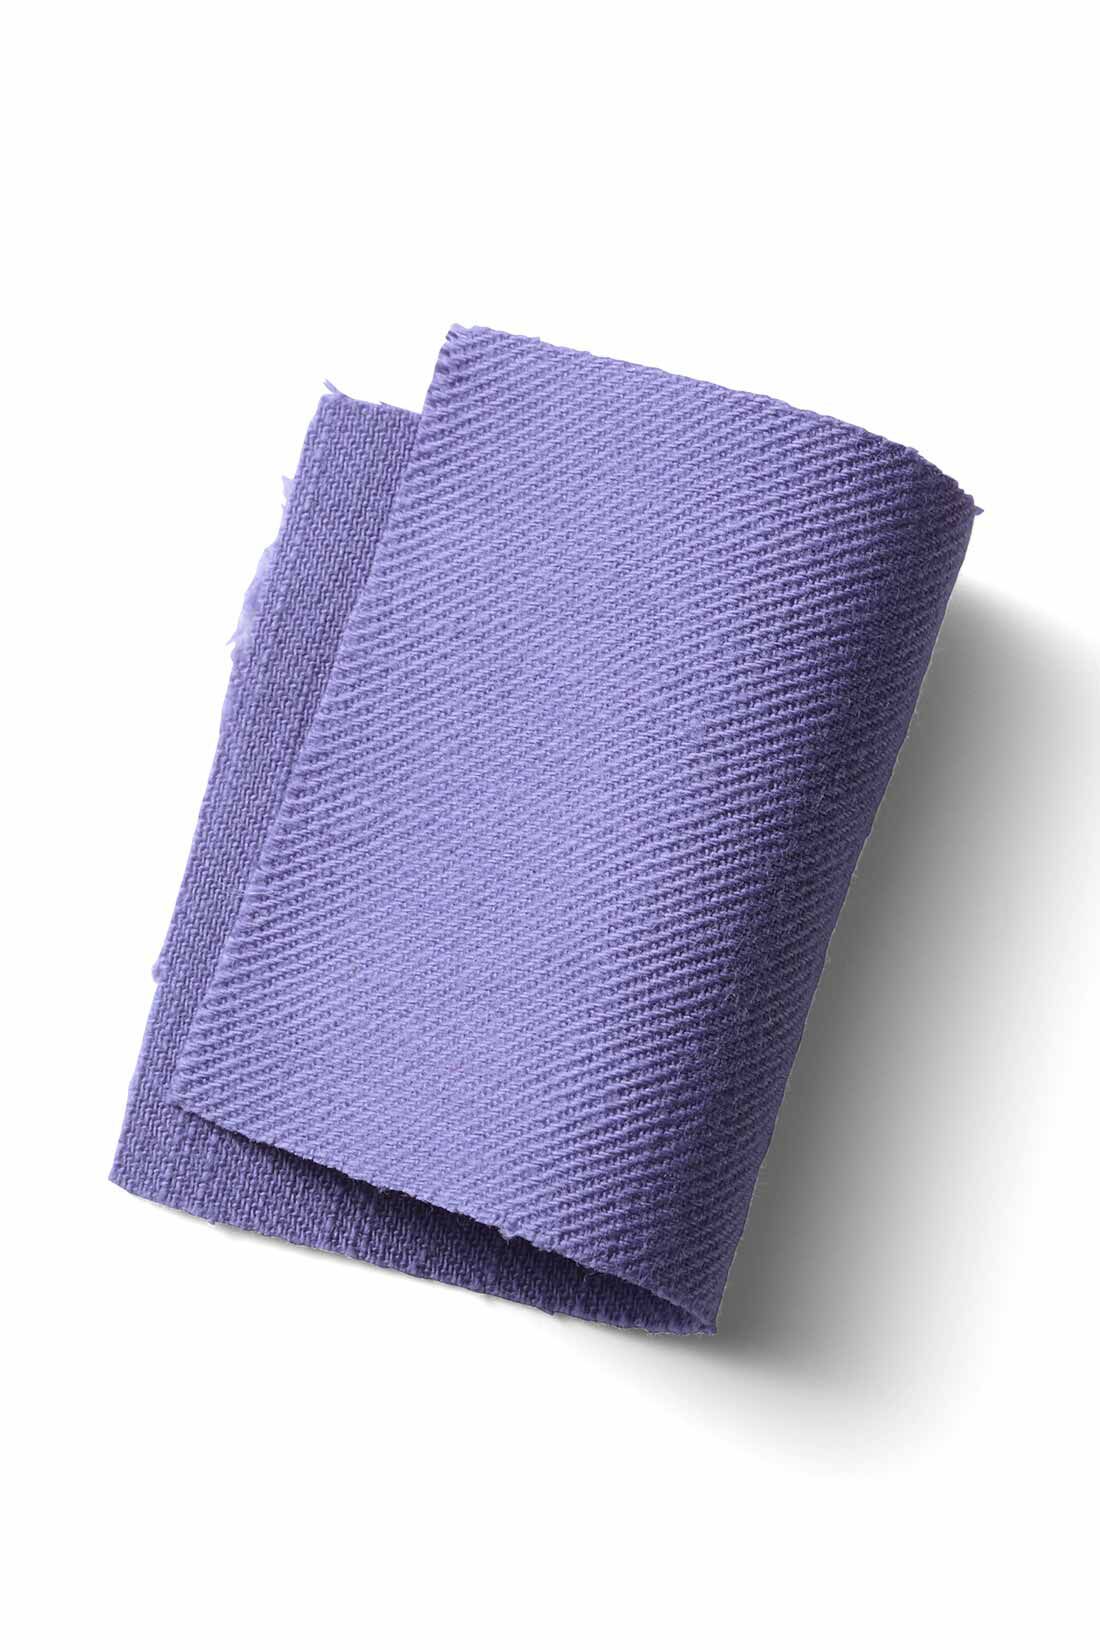 MEDE19F|MEDE19F　ライトオンスコットンオーバーオール〈アイボリー〉|軽く着られる、ライトオンスの綿素材。ゆるさのあるやわらかな風合いが夏に快適です。